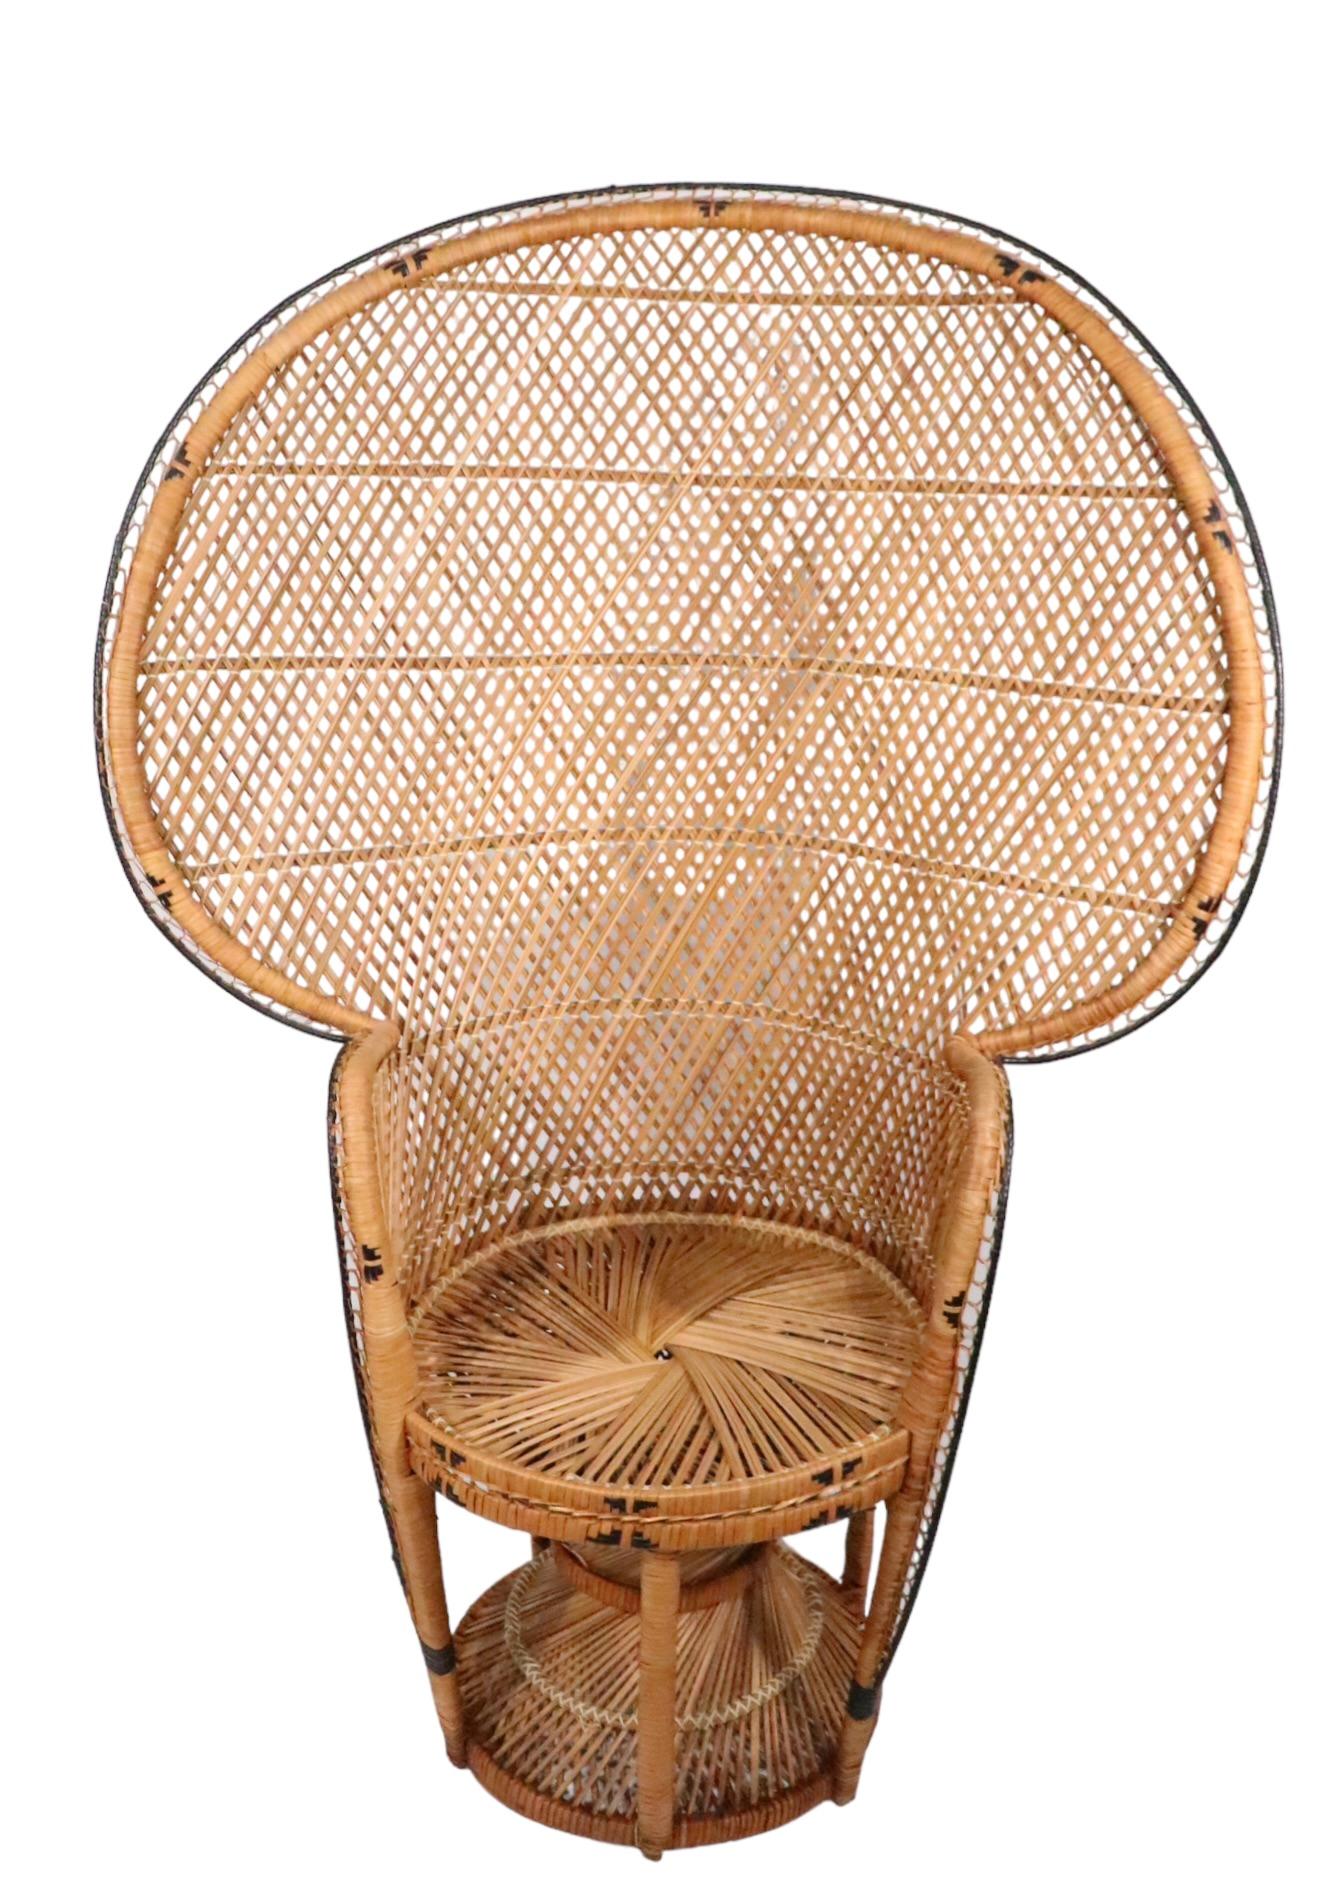 Emmanuelle  Peacock Bamboo Wicker Fan Chair c. 1960/1970's For Sale 5